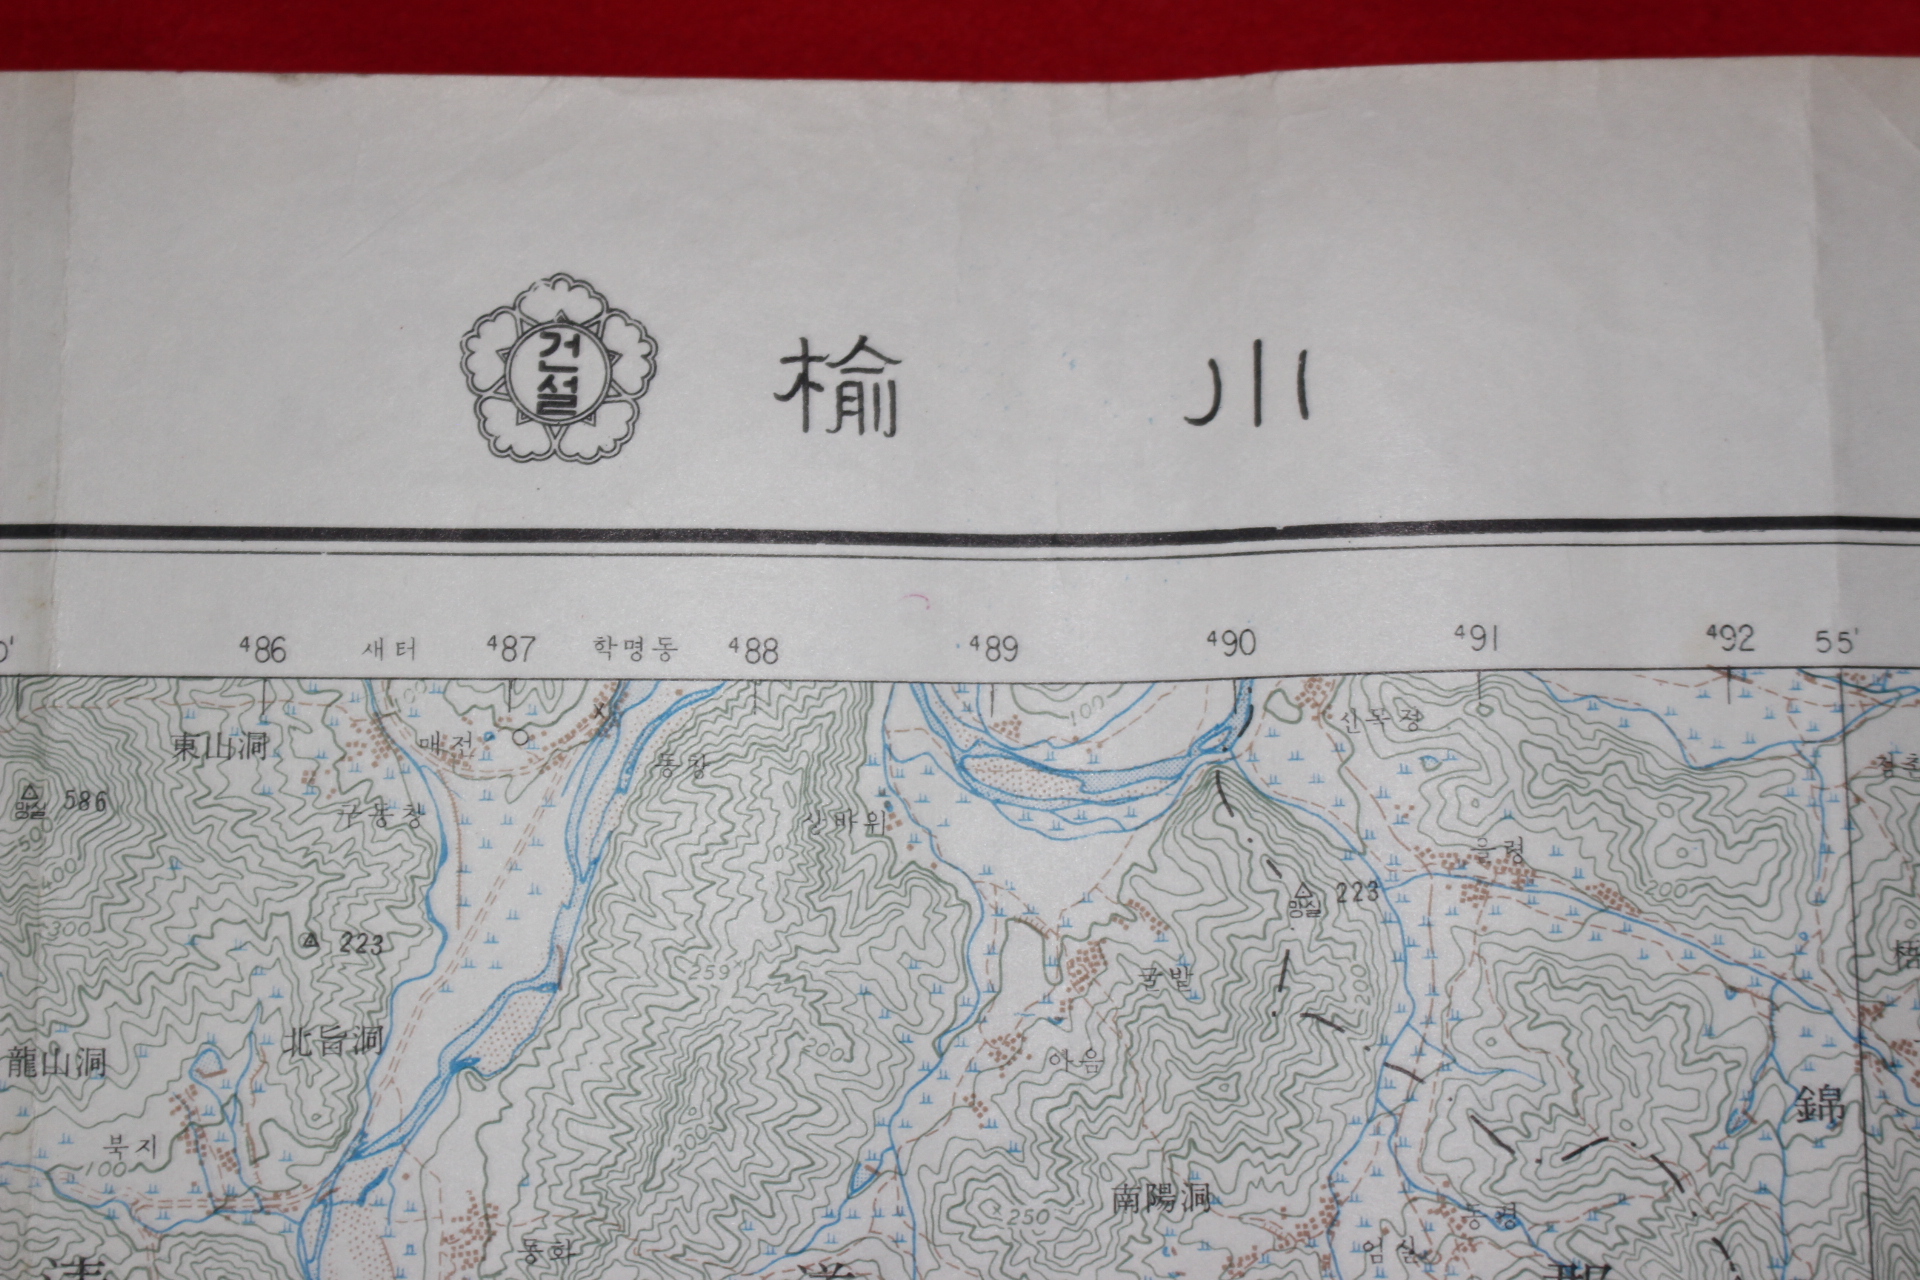 279-1968년 청도군 유천 지도